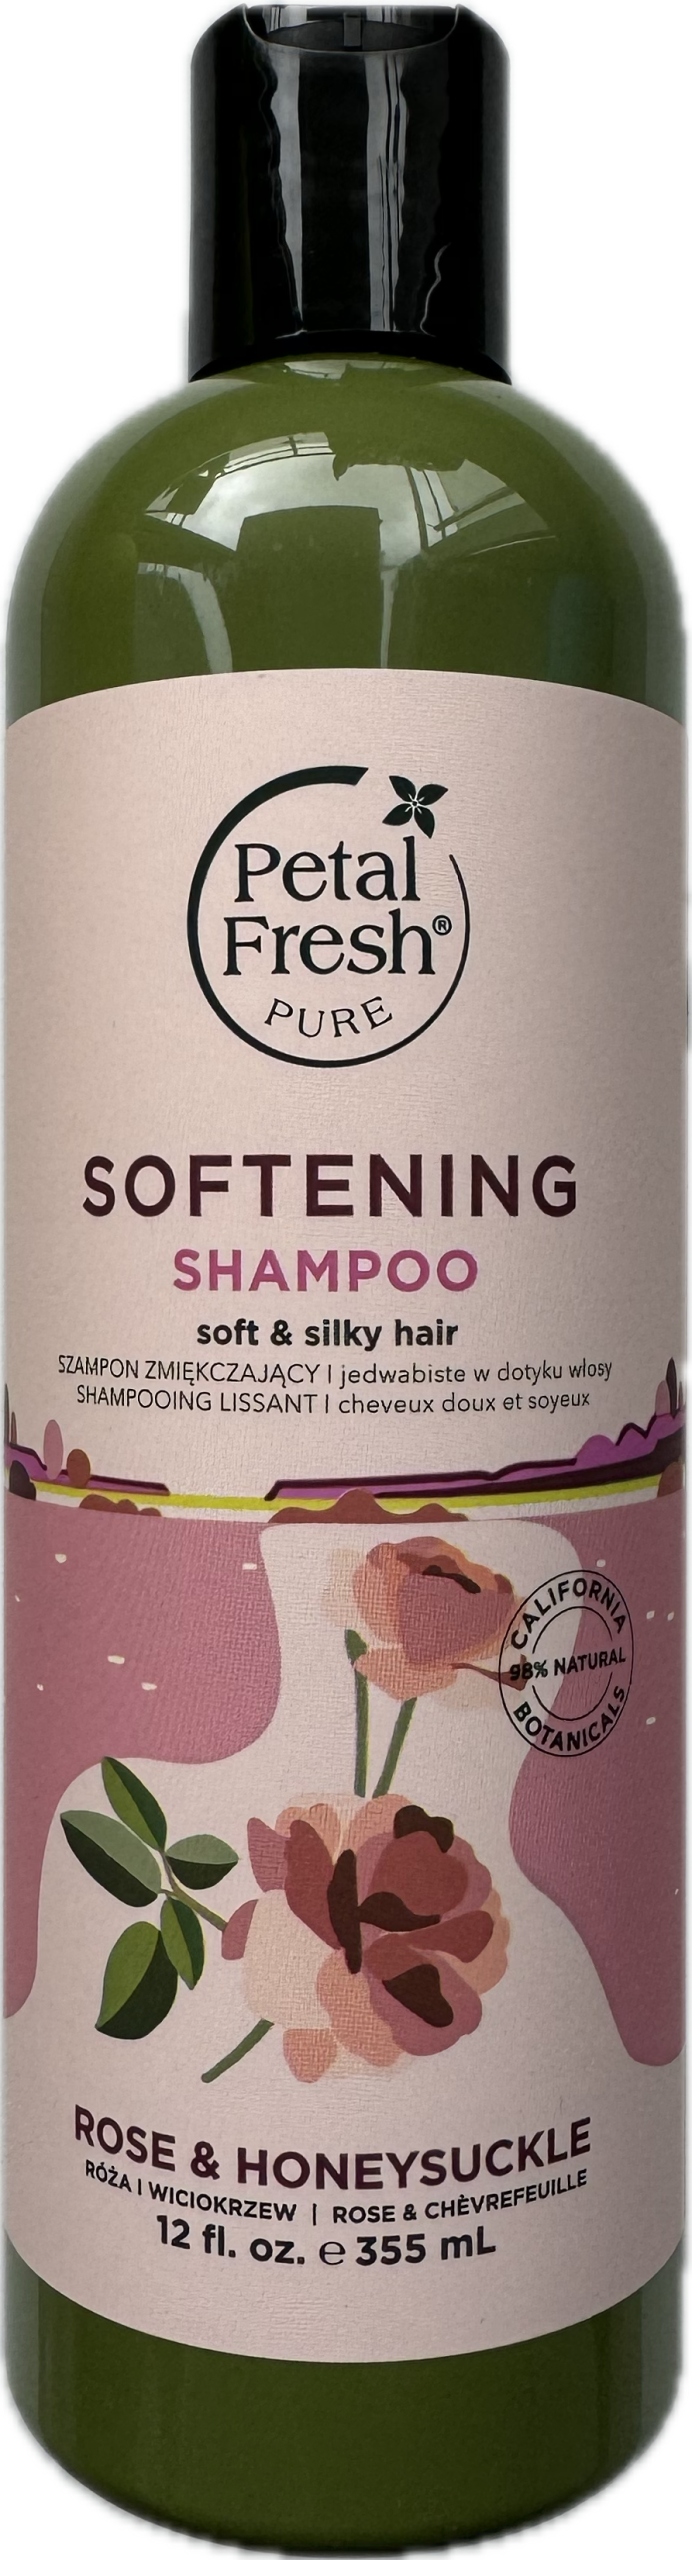 0etal fresh szampon